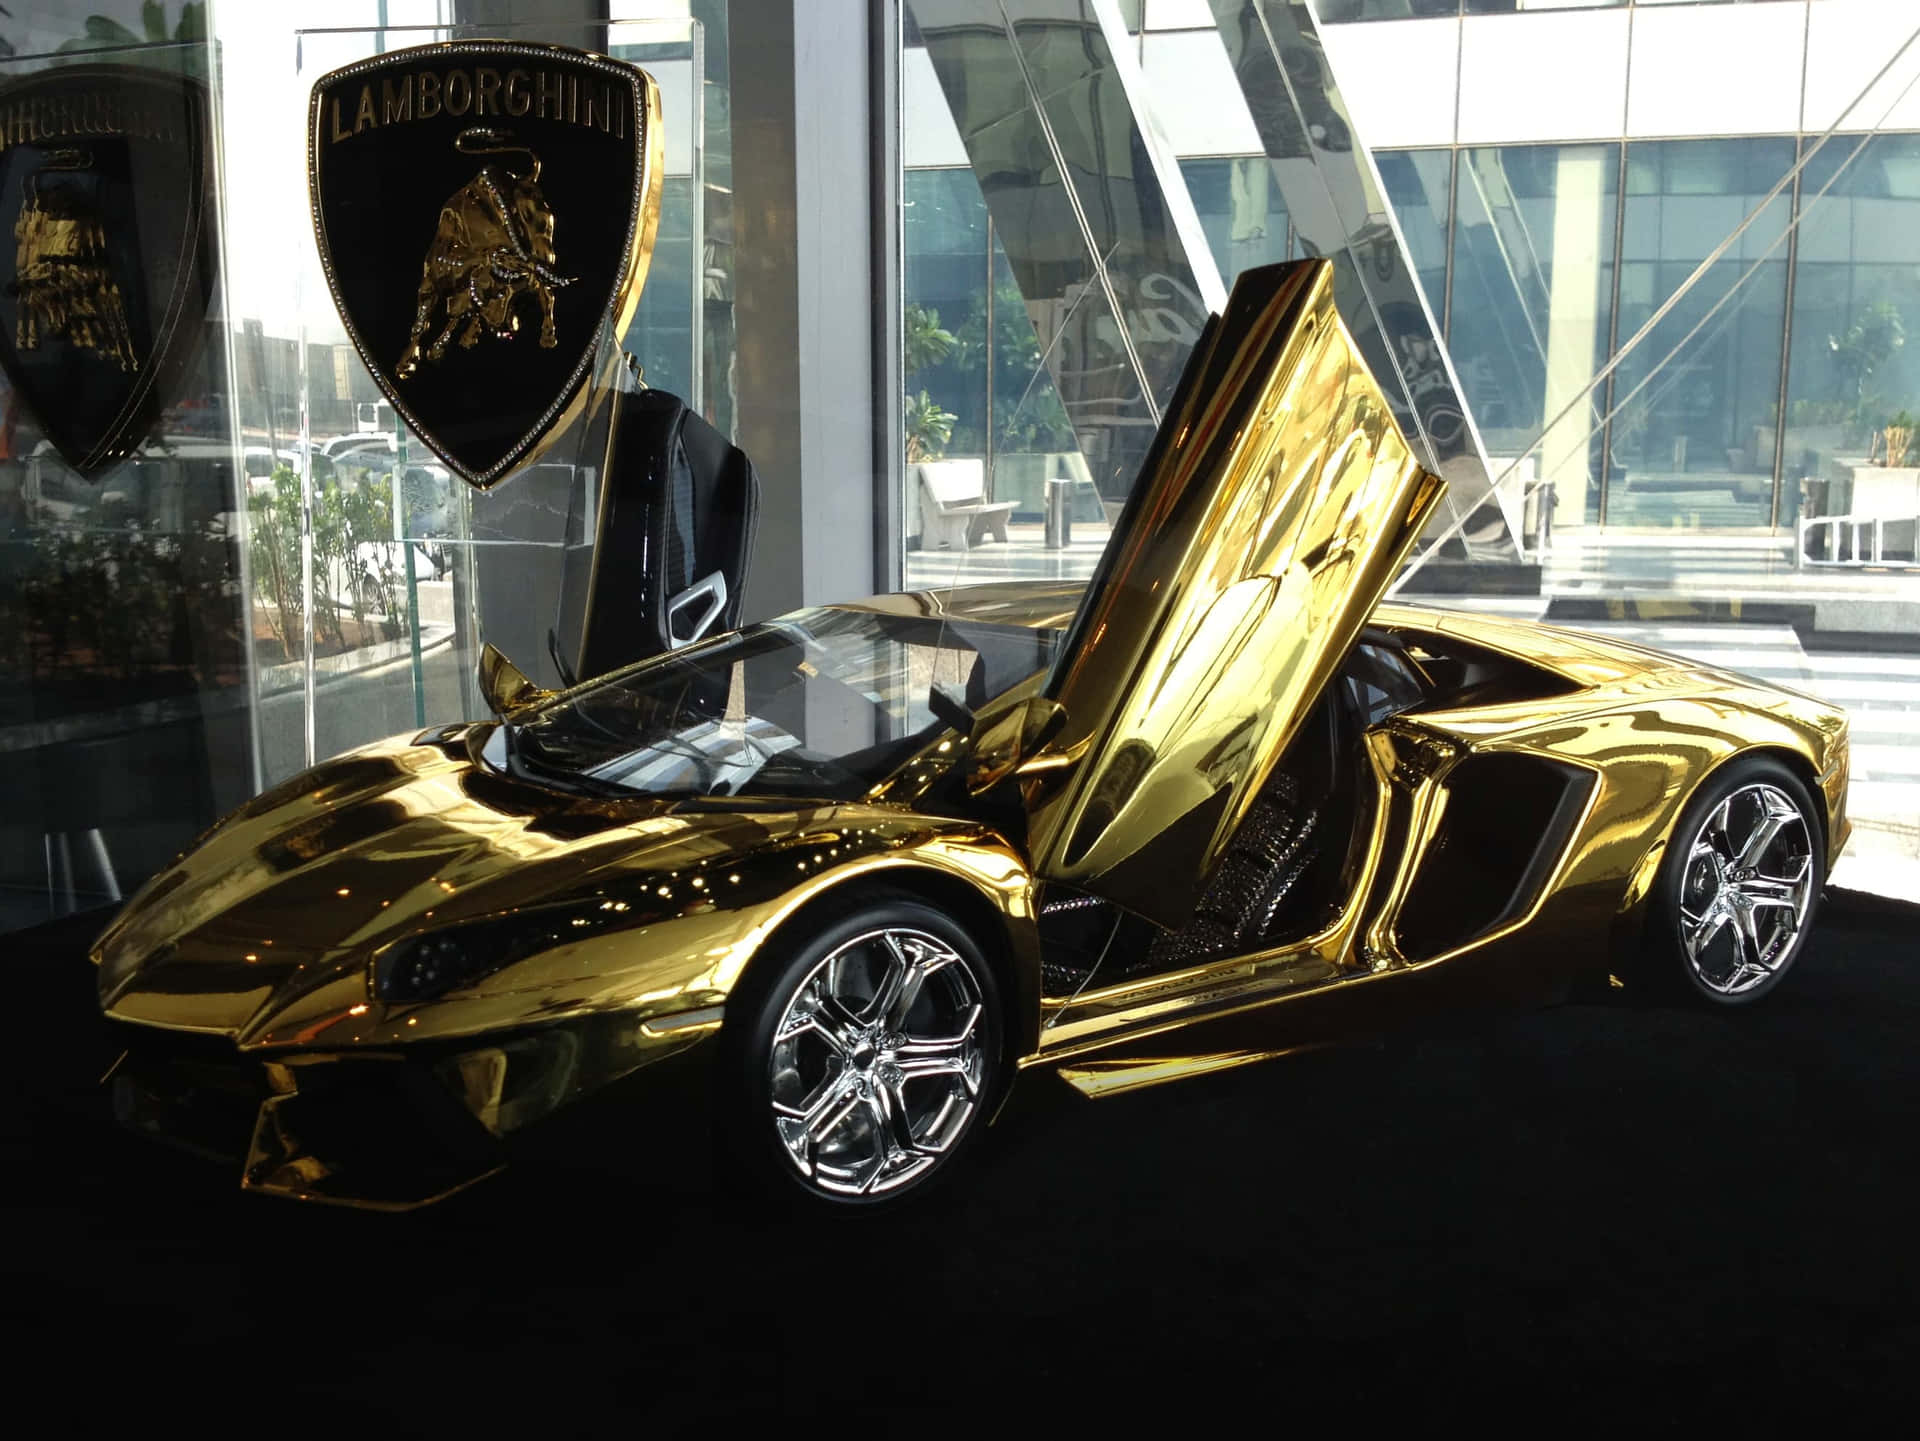 Eingoldener Lamborghini Sportwagen Wird In Einer Ausstellungshalle Präsentiert.